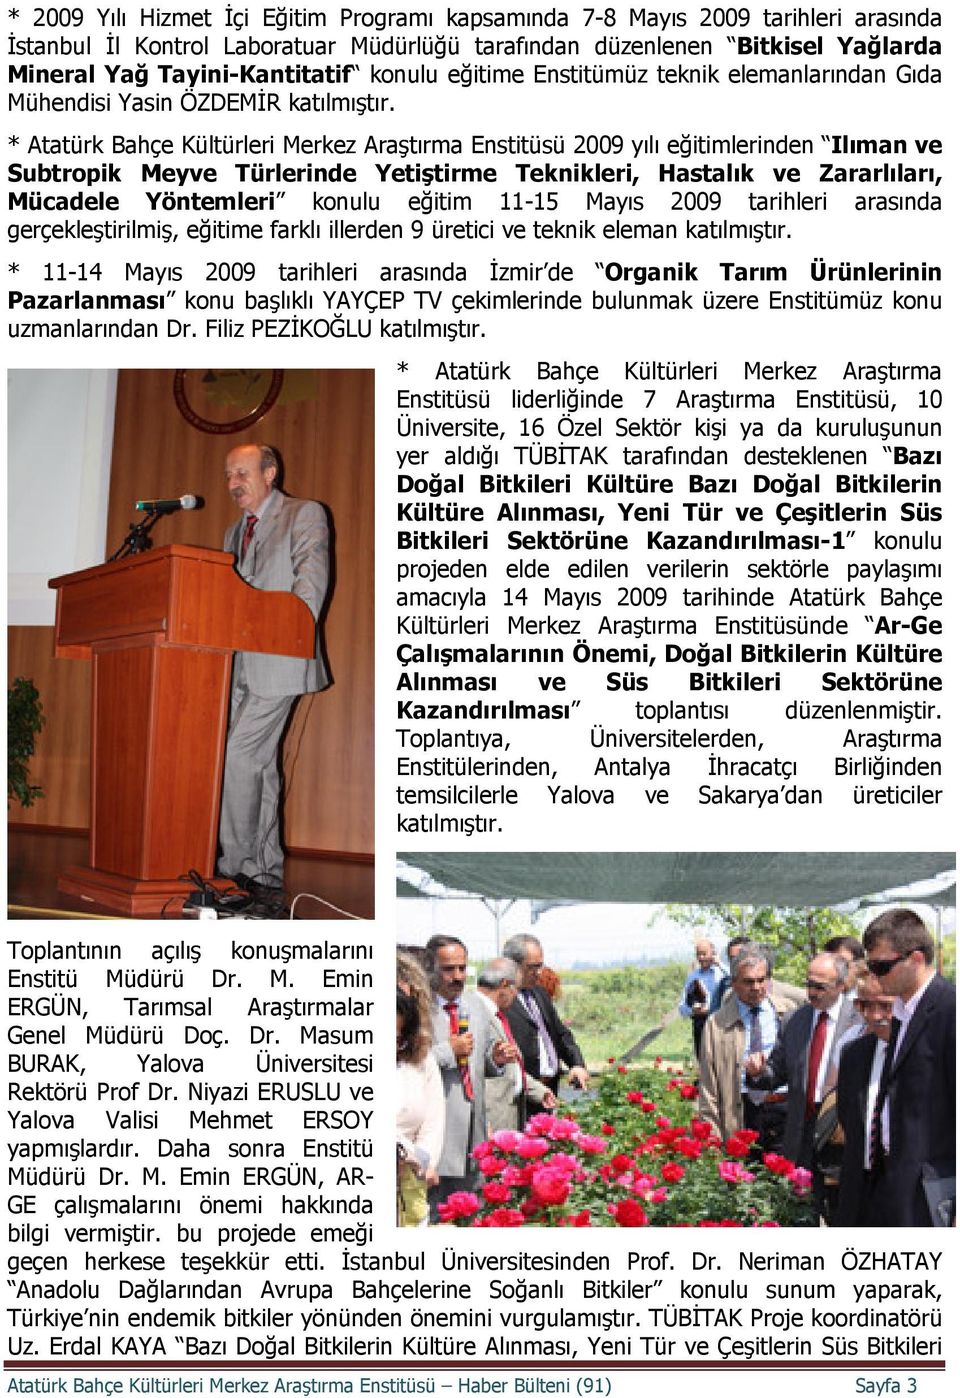 * Atatürk Bahçe Kültürleri Merkez Araştırma Enstitüsü 2009 yılı eğitimlerinden Ilıman ve Subtropik Meyve Türlerinde Yetiştirme Teknikleri, Hastalık ve Zararlıları, Mücadele Yöntemleri konulu eğitim